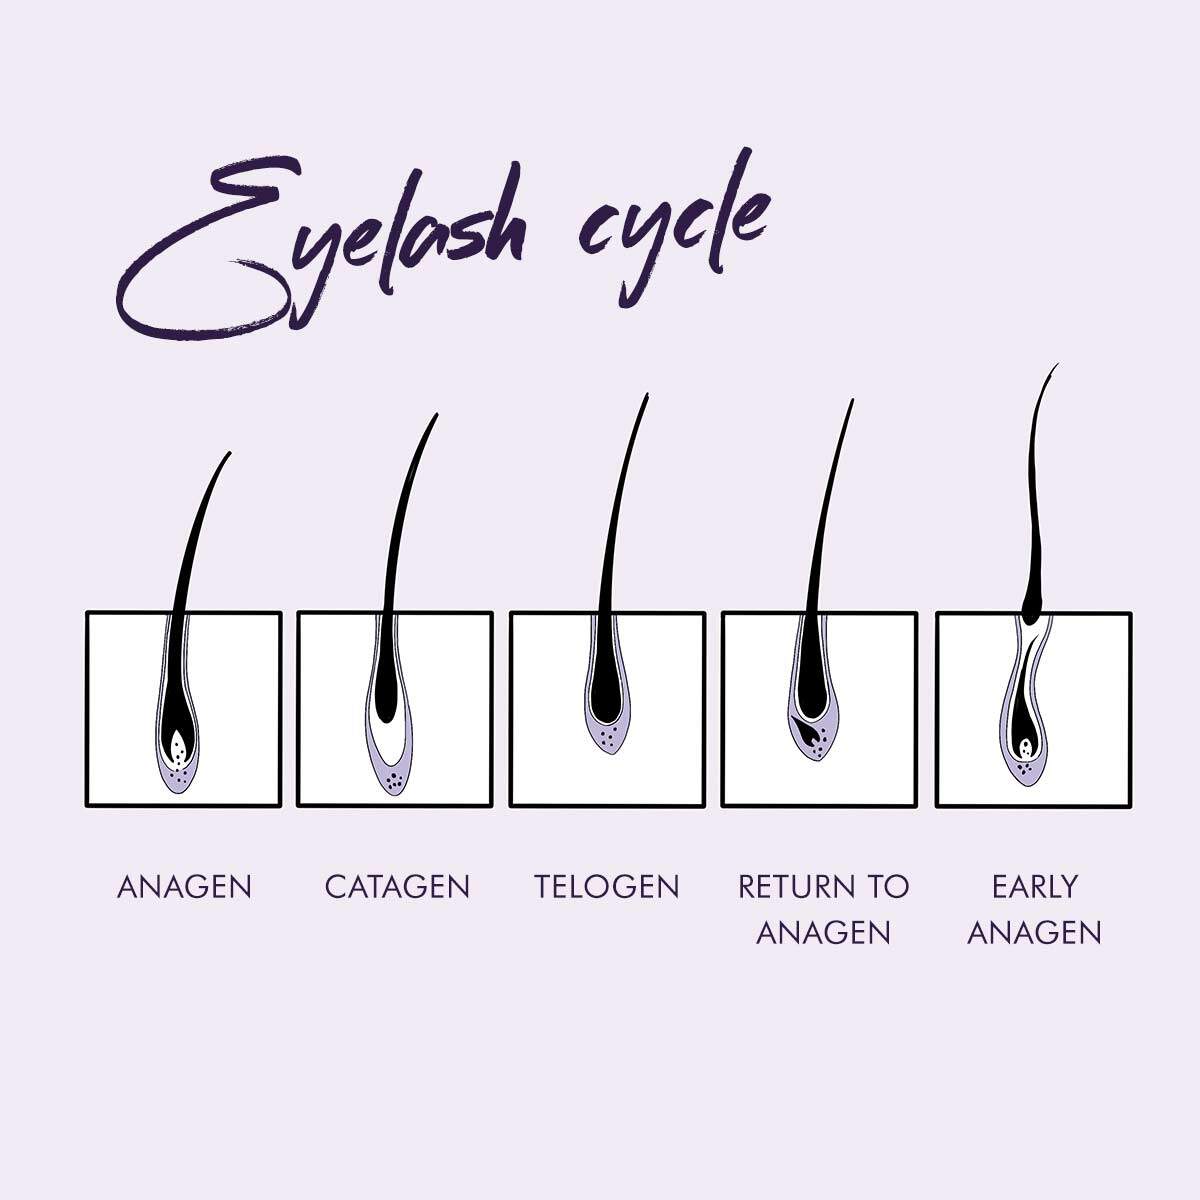 eyelash growth cycle diagram